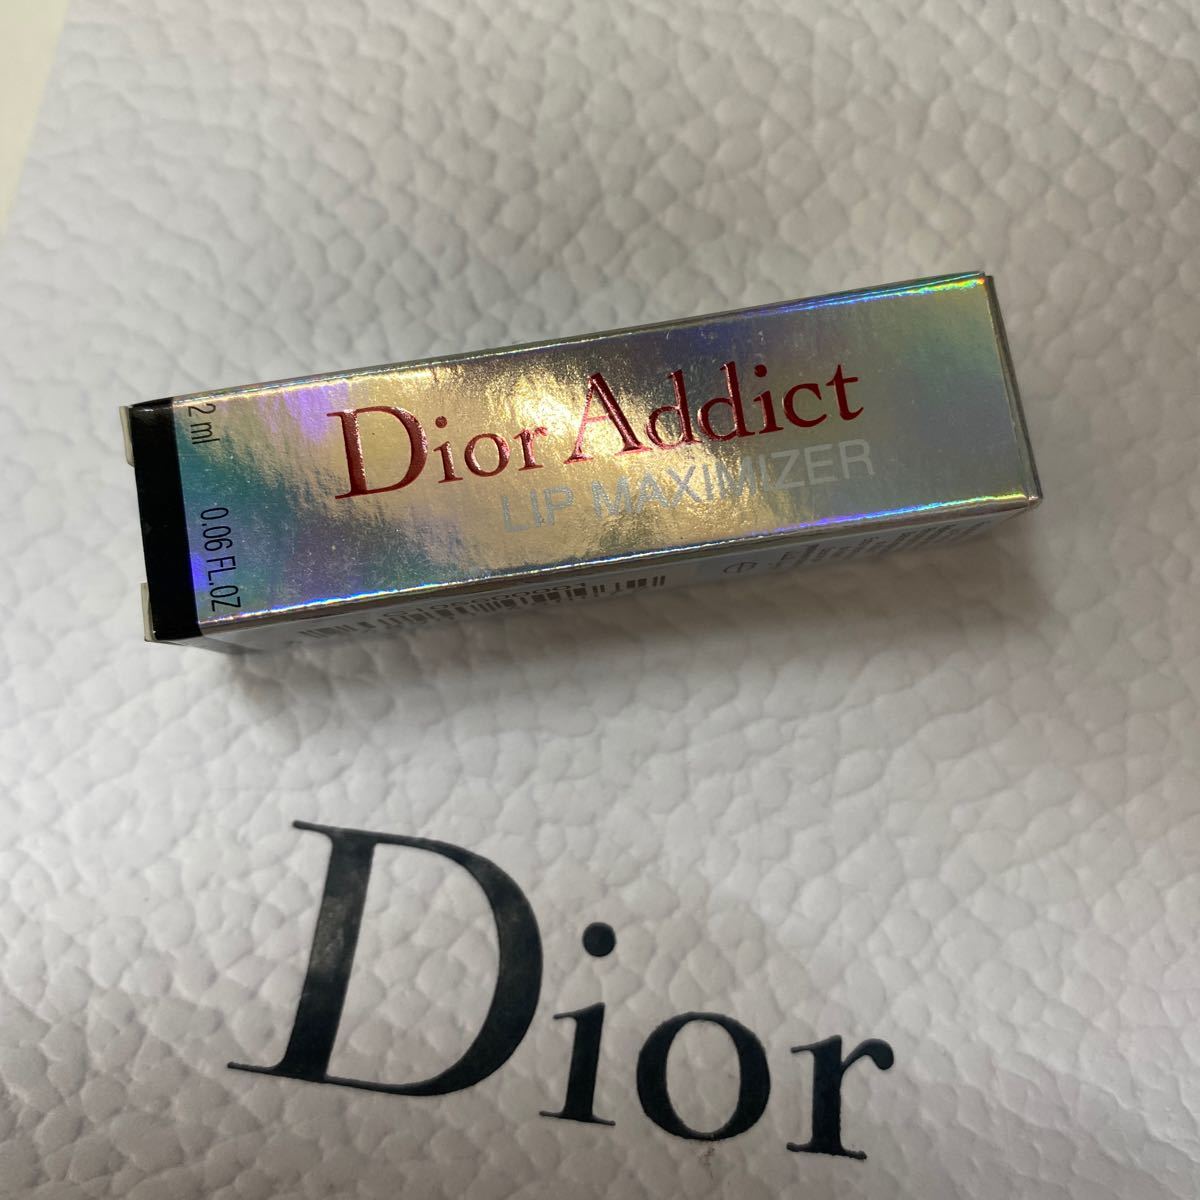 【ミニサイズ】 クリスチャンディオール Dior ディオールアディクトリップマキシマイザー #001 ピンク 2ml 